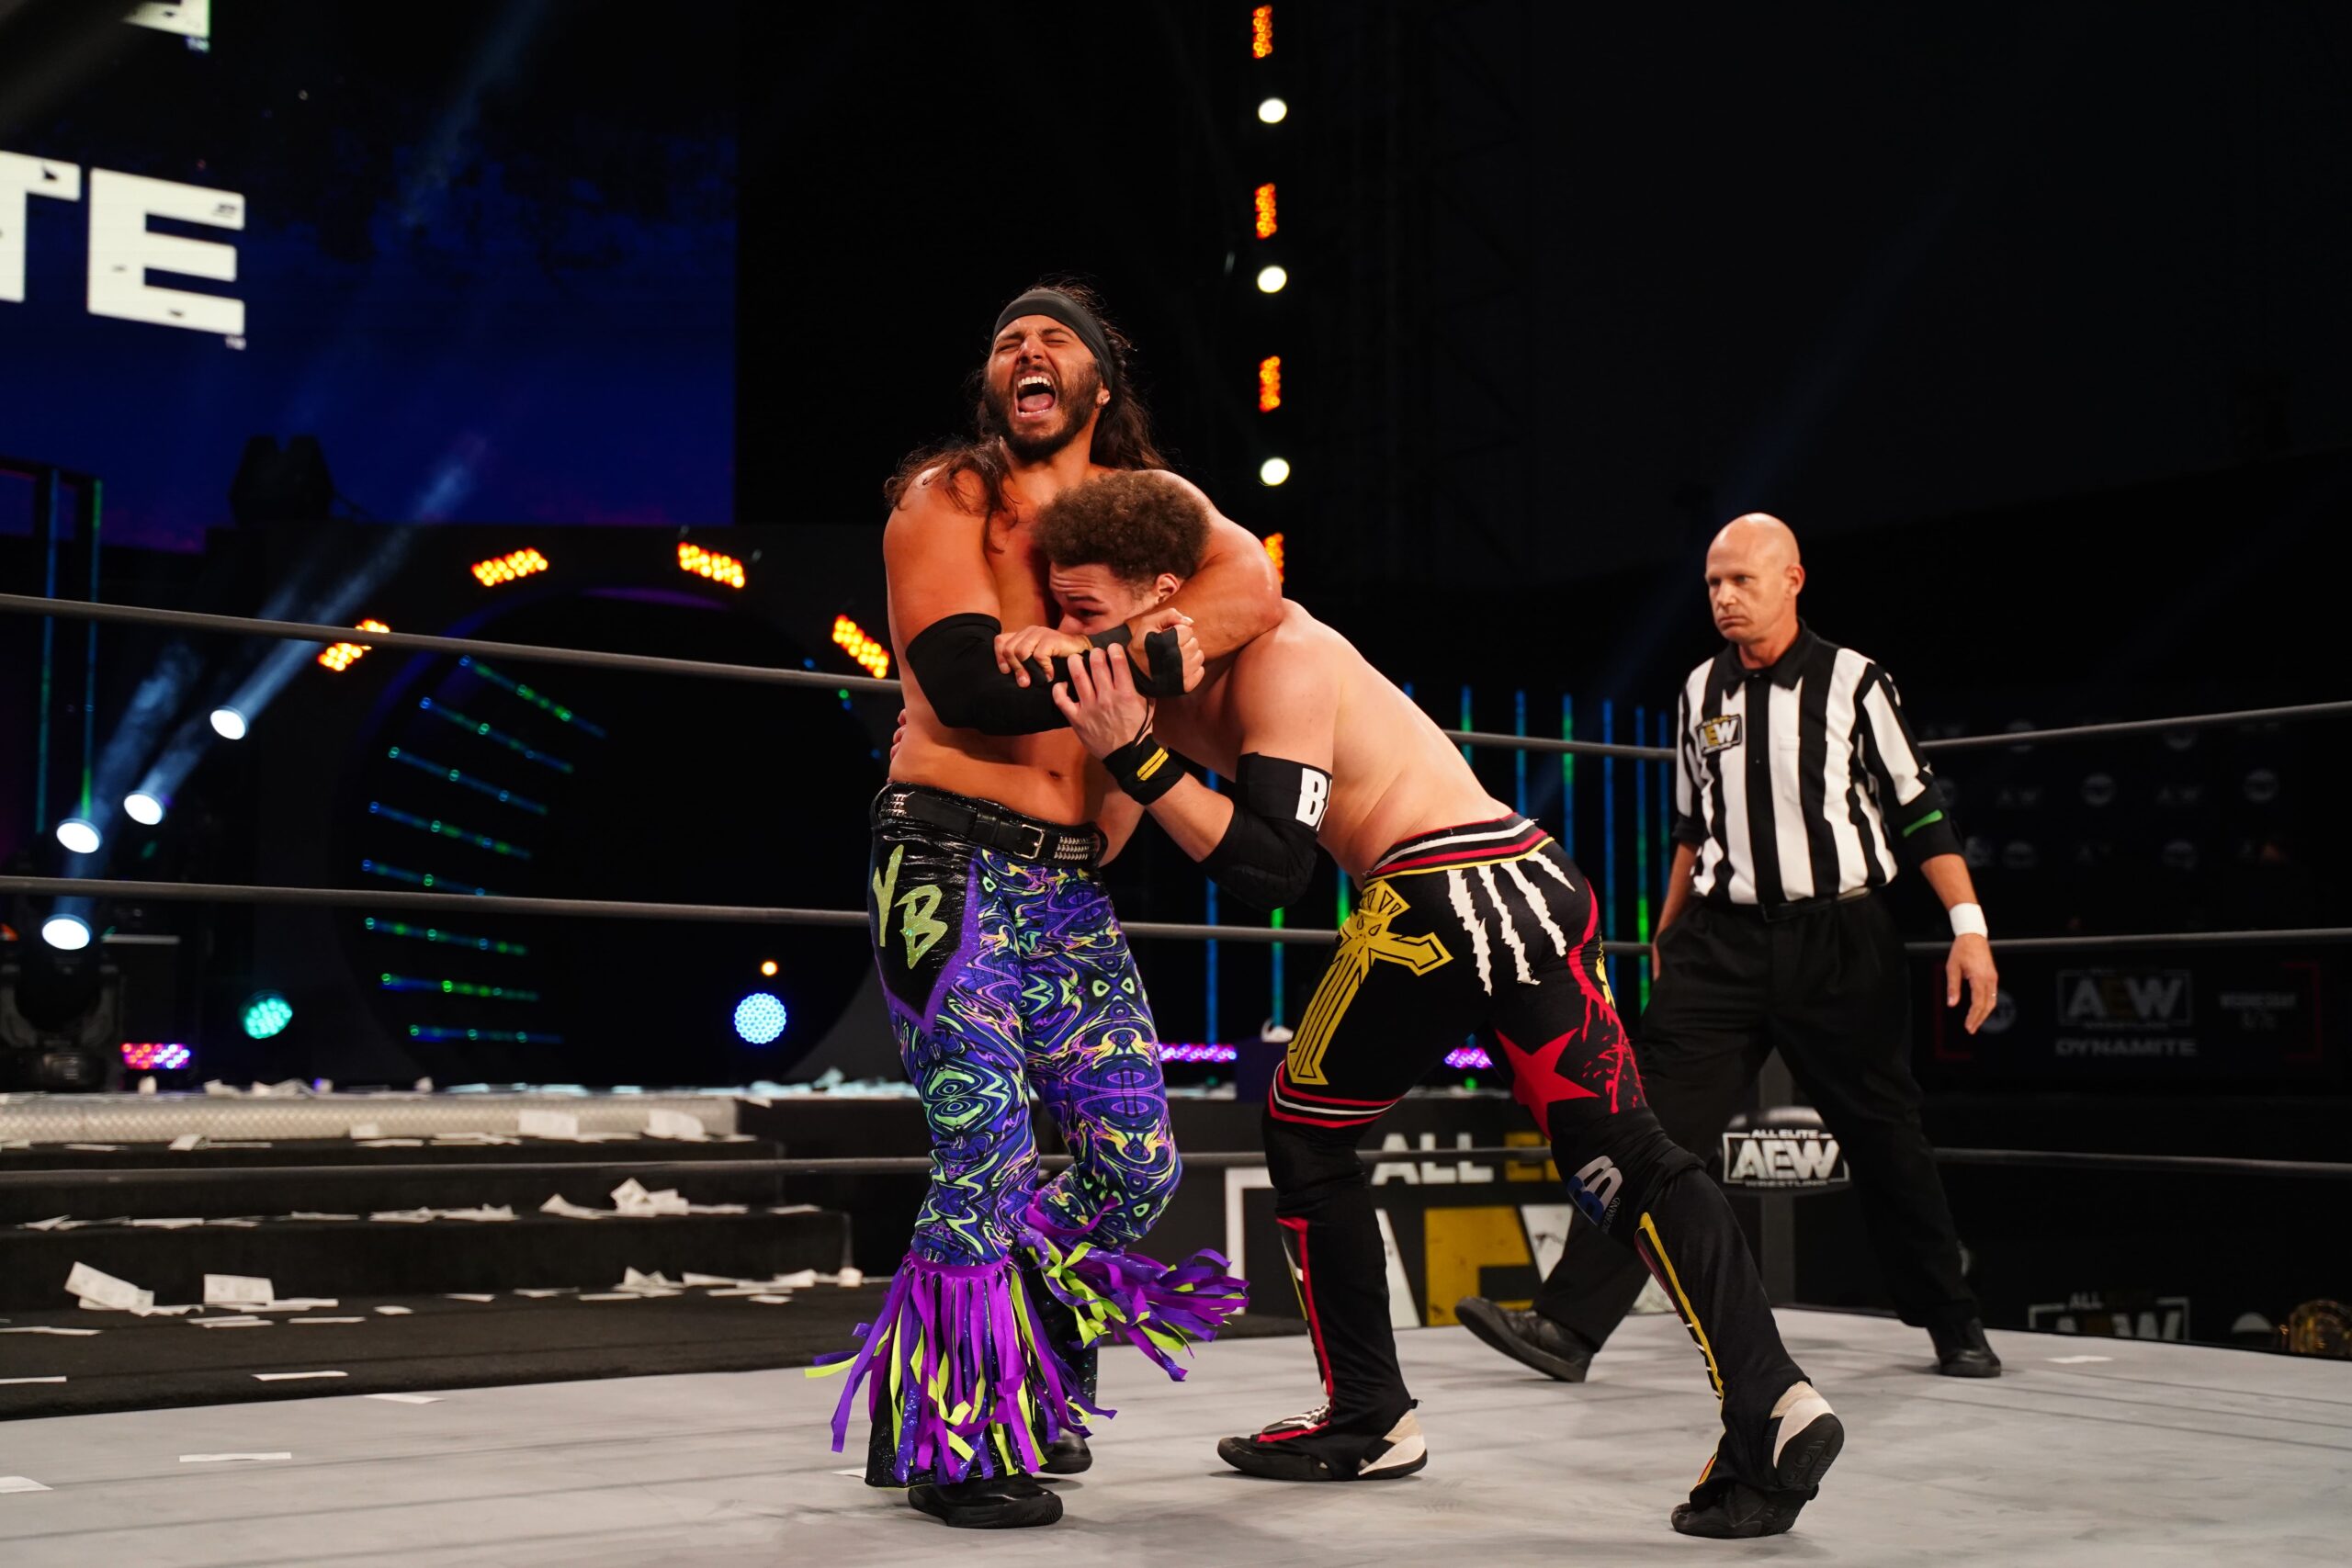 Acción, adrenalina y los mejores combates continúan en SPACE con la emisión del segundo episodio de All Elite Wrestling (AEW), el próximo domingo.